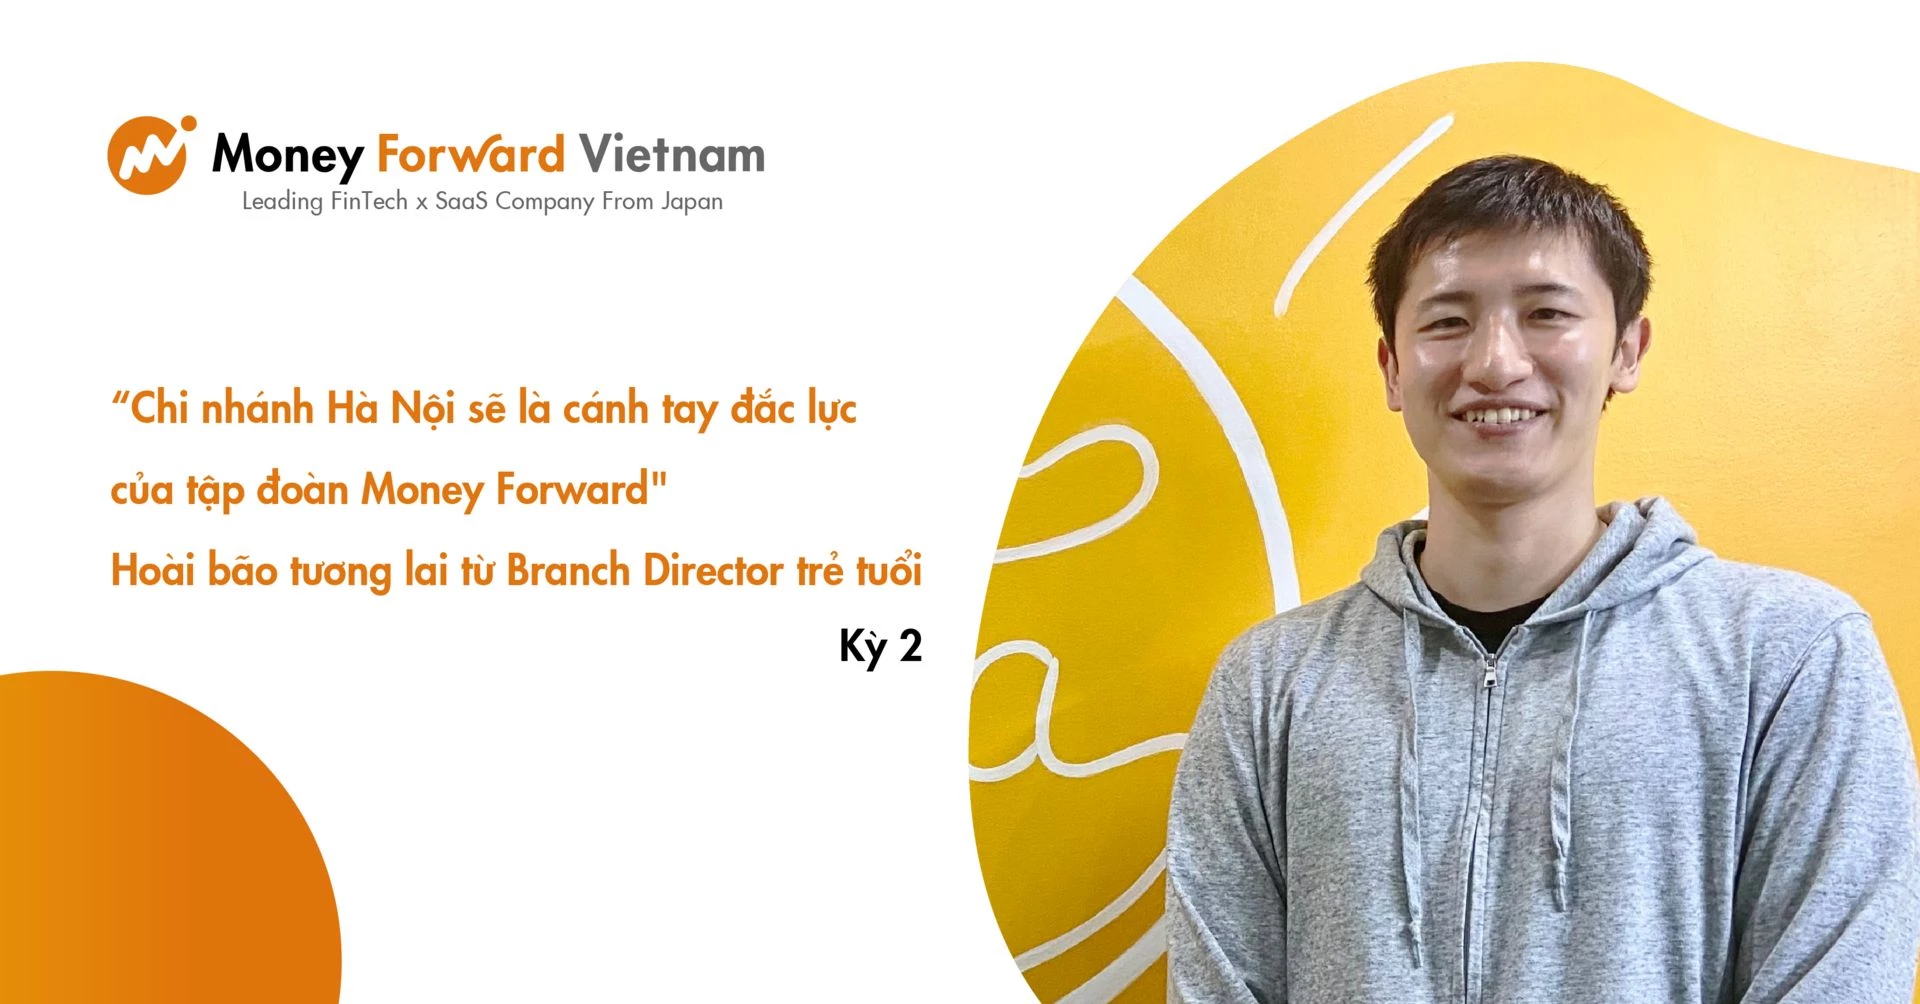 “Chi nhánh Hà Nội sẽ là cánh tay đắc lực của tập đoàn Money Forward“ - hoài bão tương lai từ Branch Director trẻ tuổi (Kỳ 2)